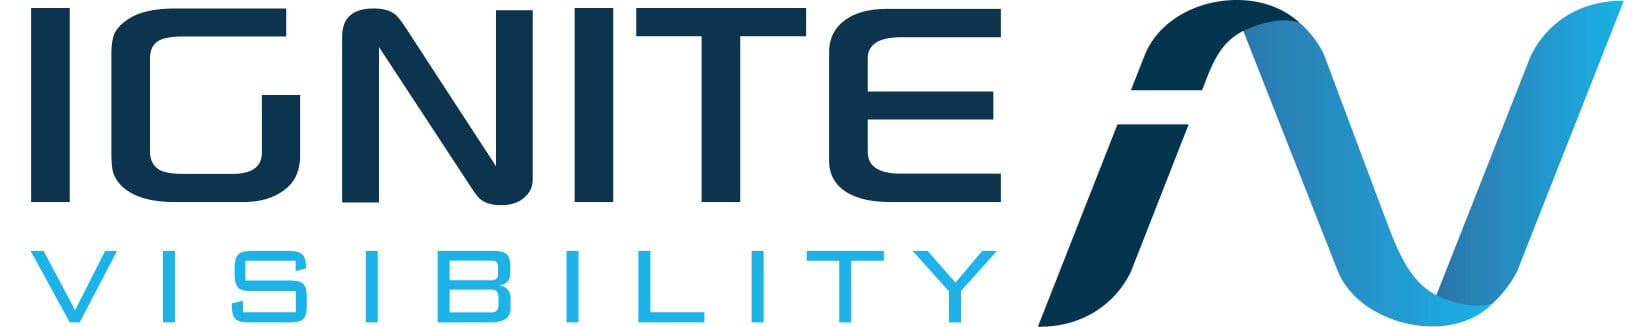 Best SMM Company Logo: Ignite Visibility